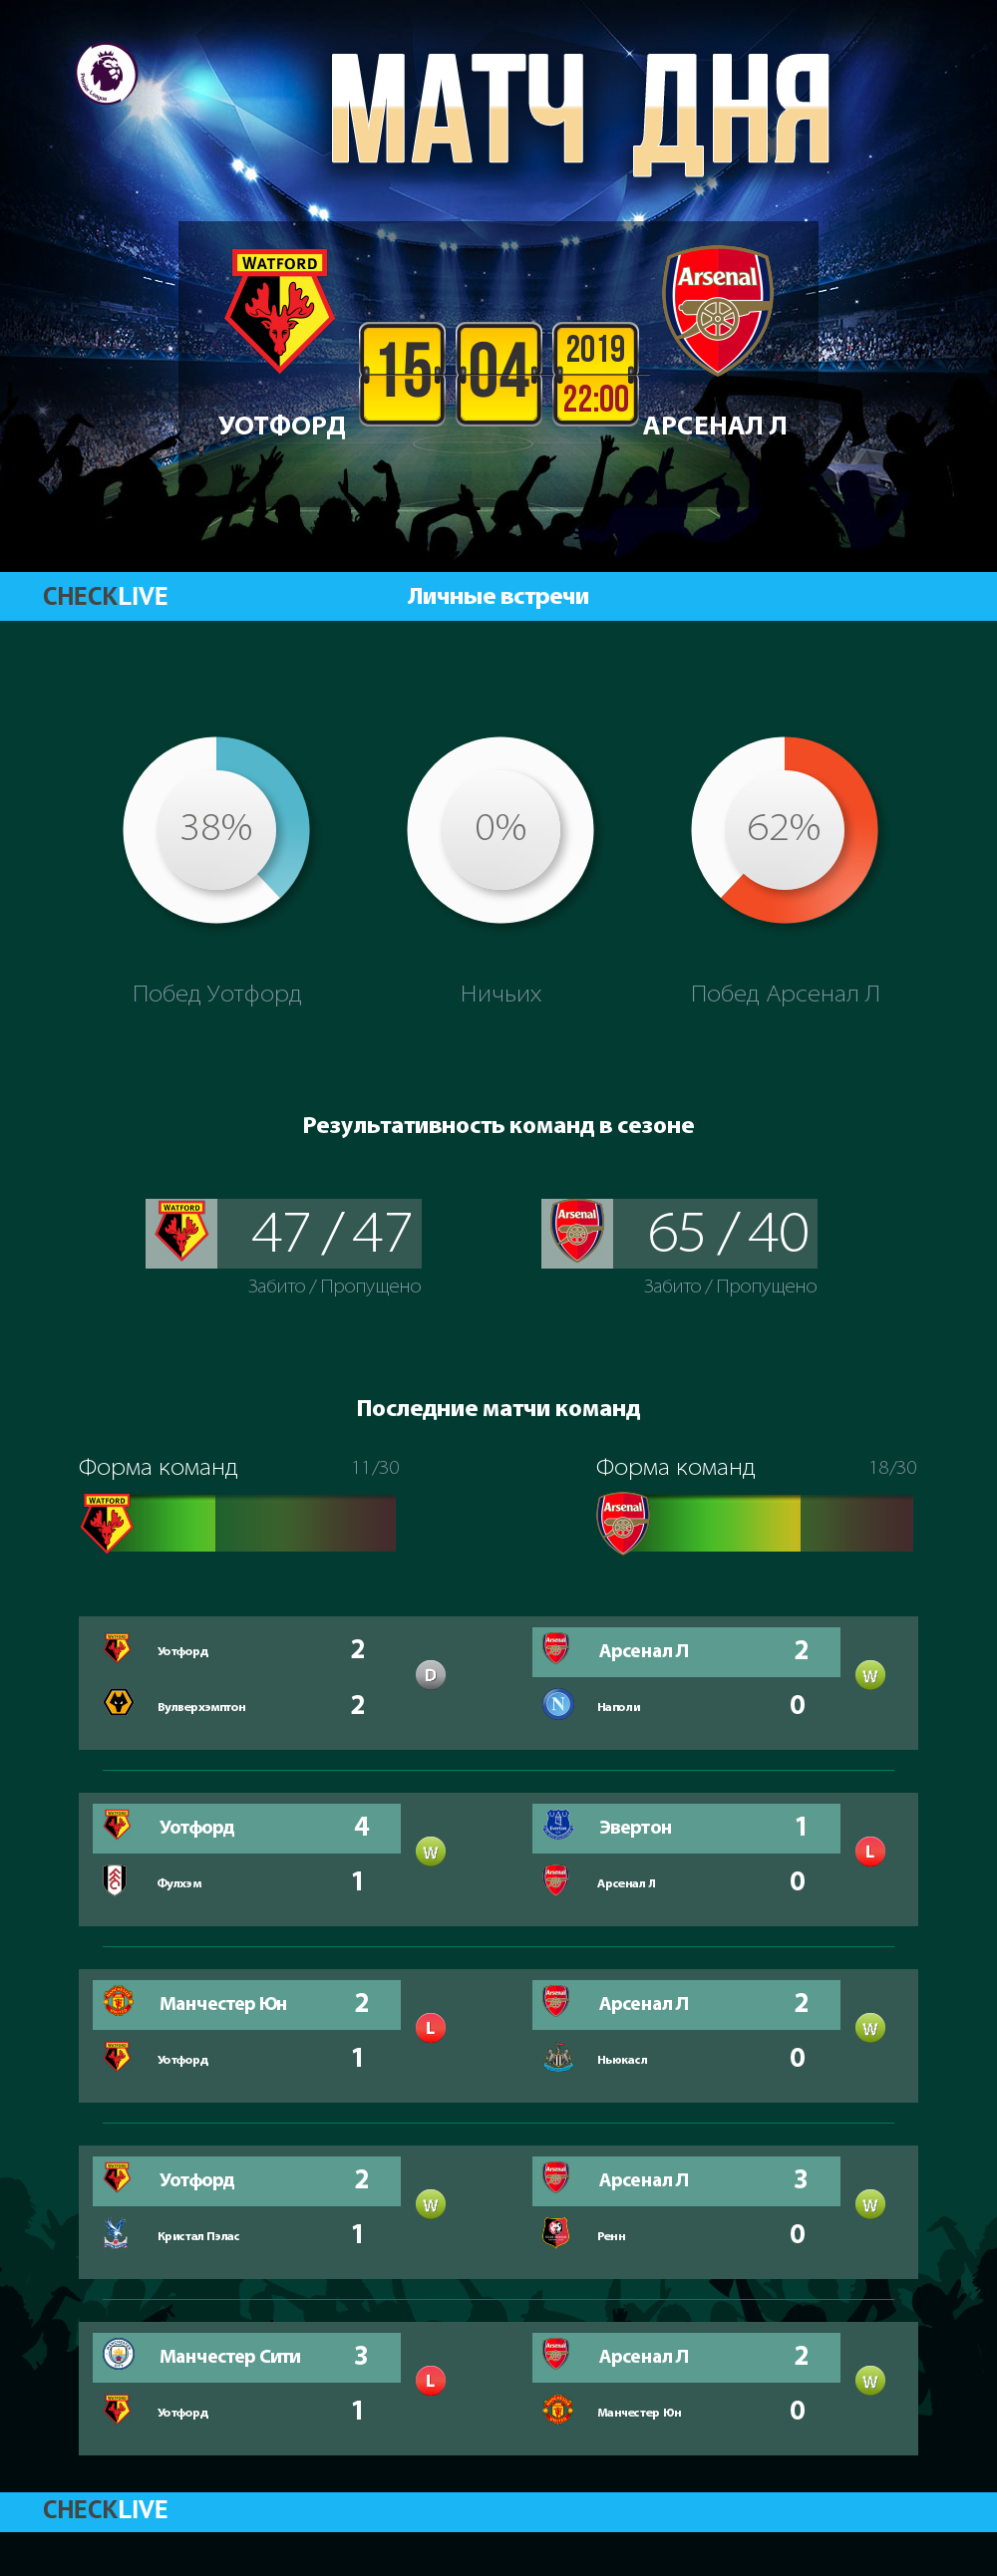 Инфографика Уотфорд и Арсенал Л матч дня 15.04.2019